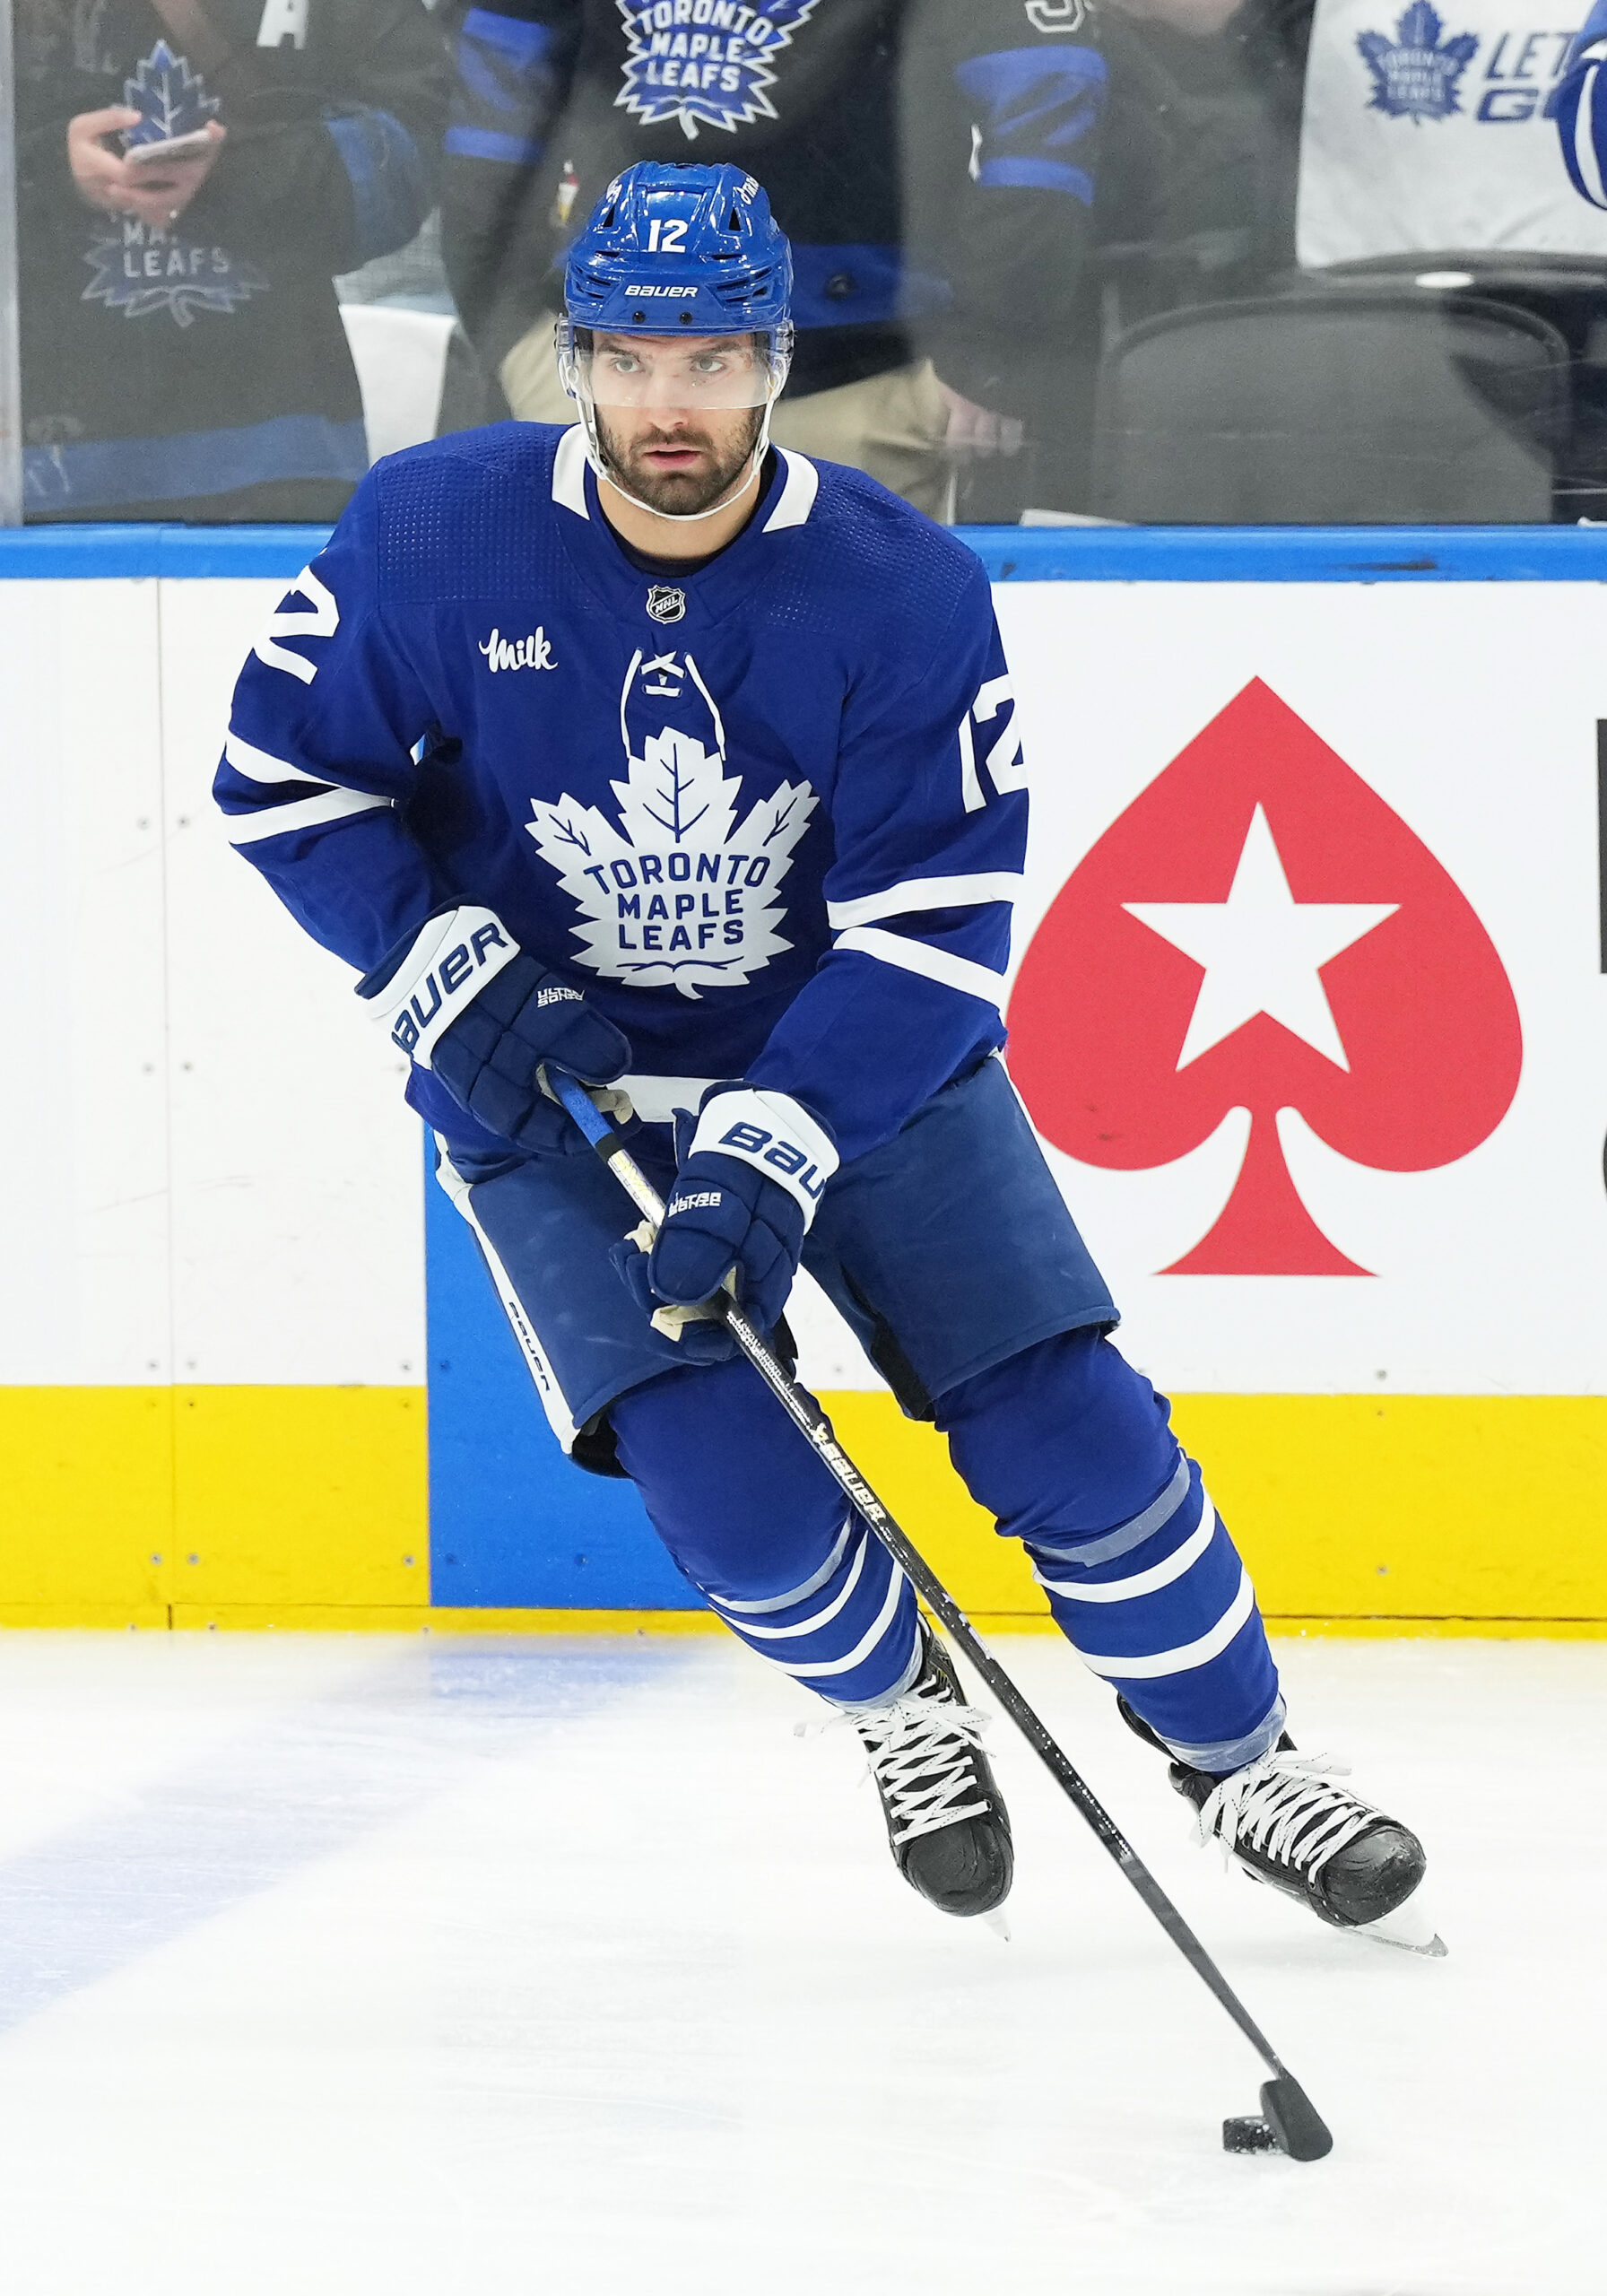 Brandon Tanev Hockey Stats and Profile at